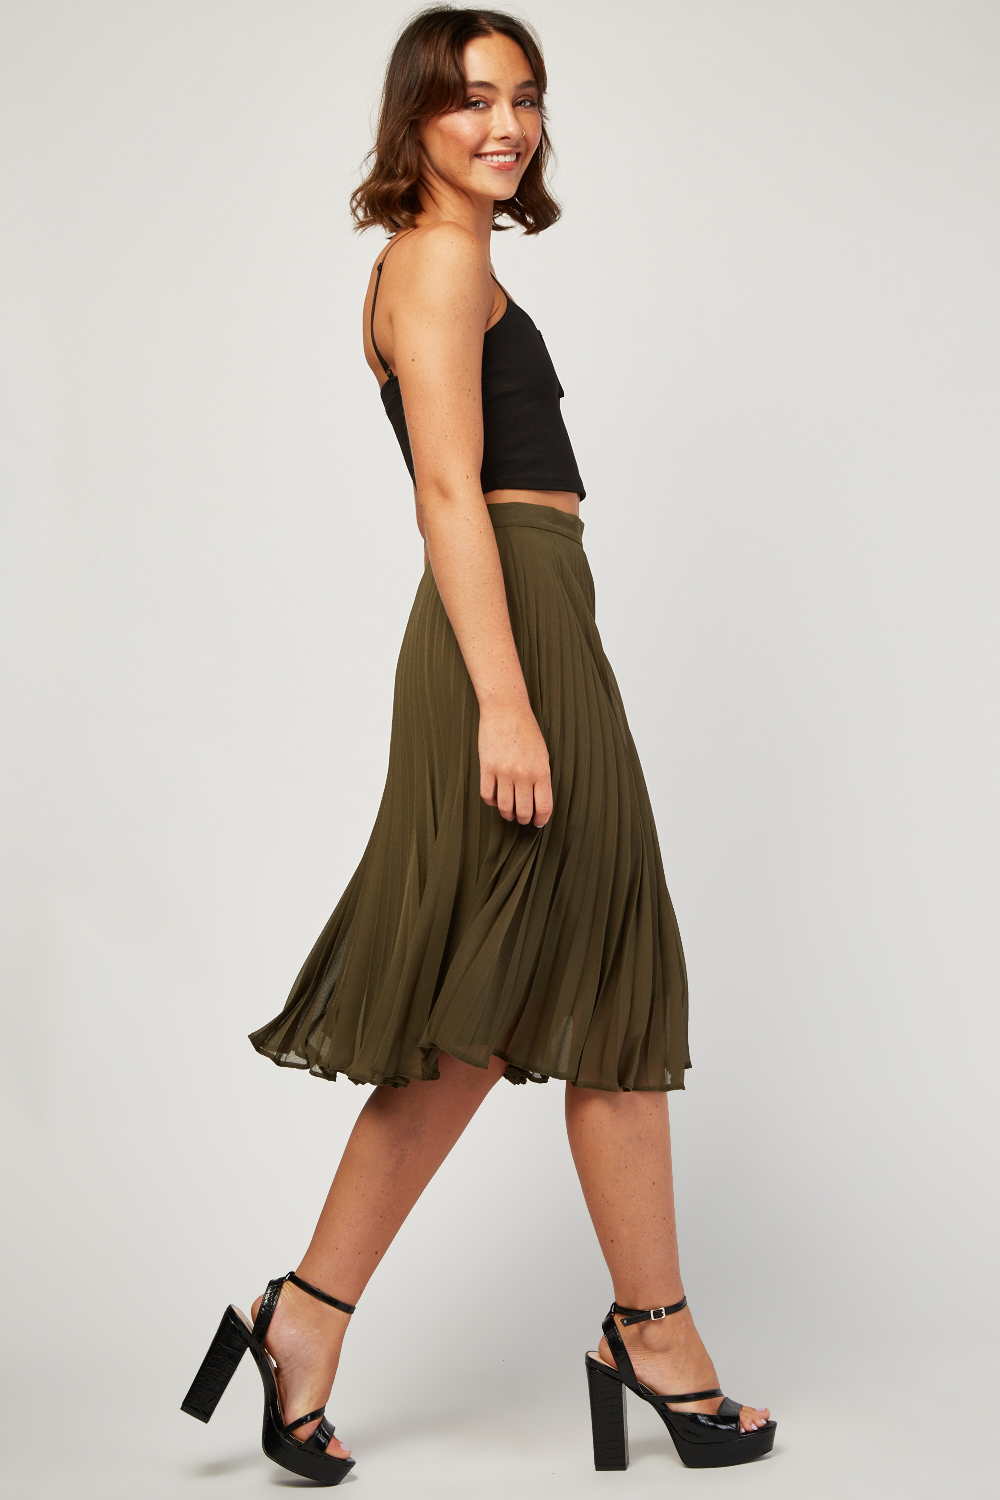 Chiffon Pleated Midi Skirt - Just $6